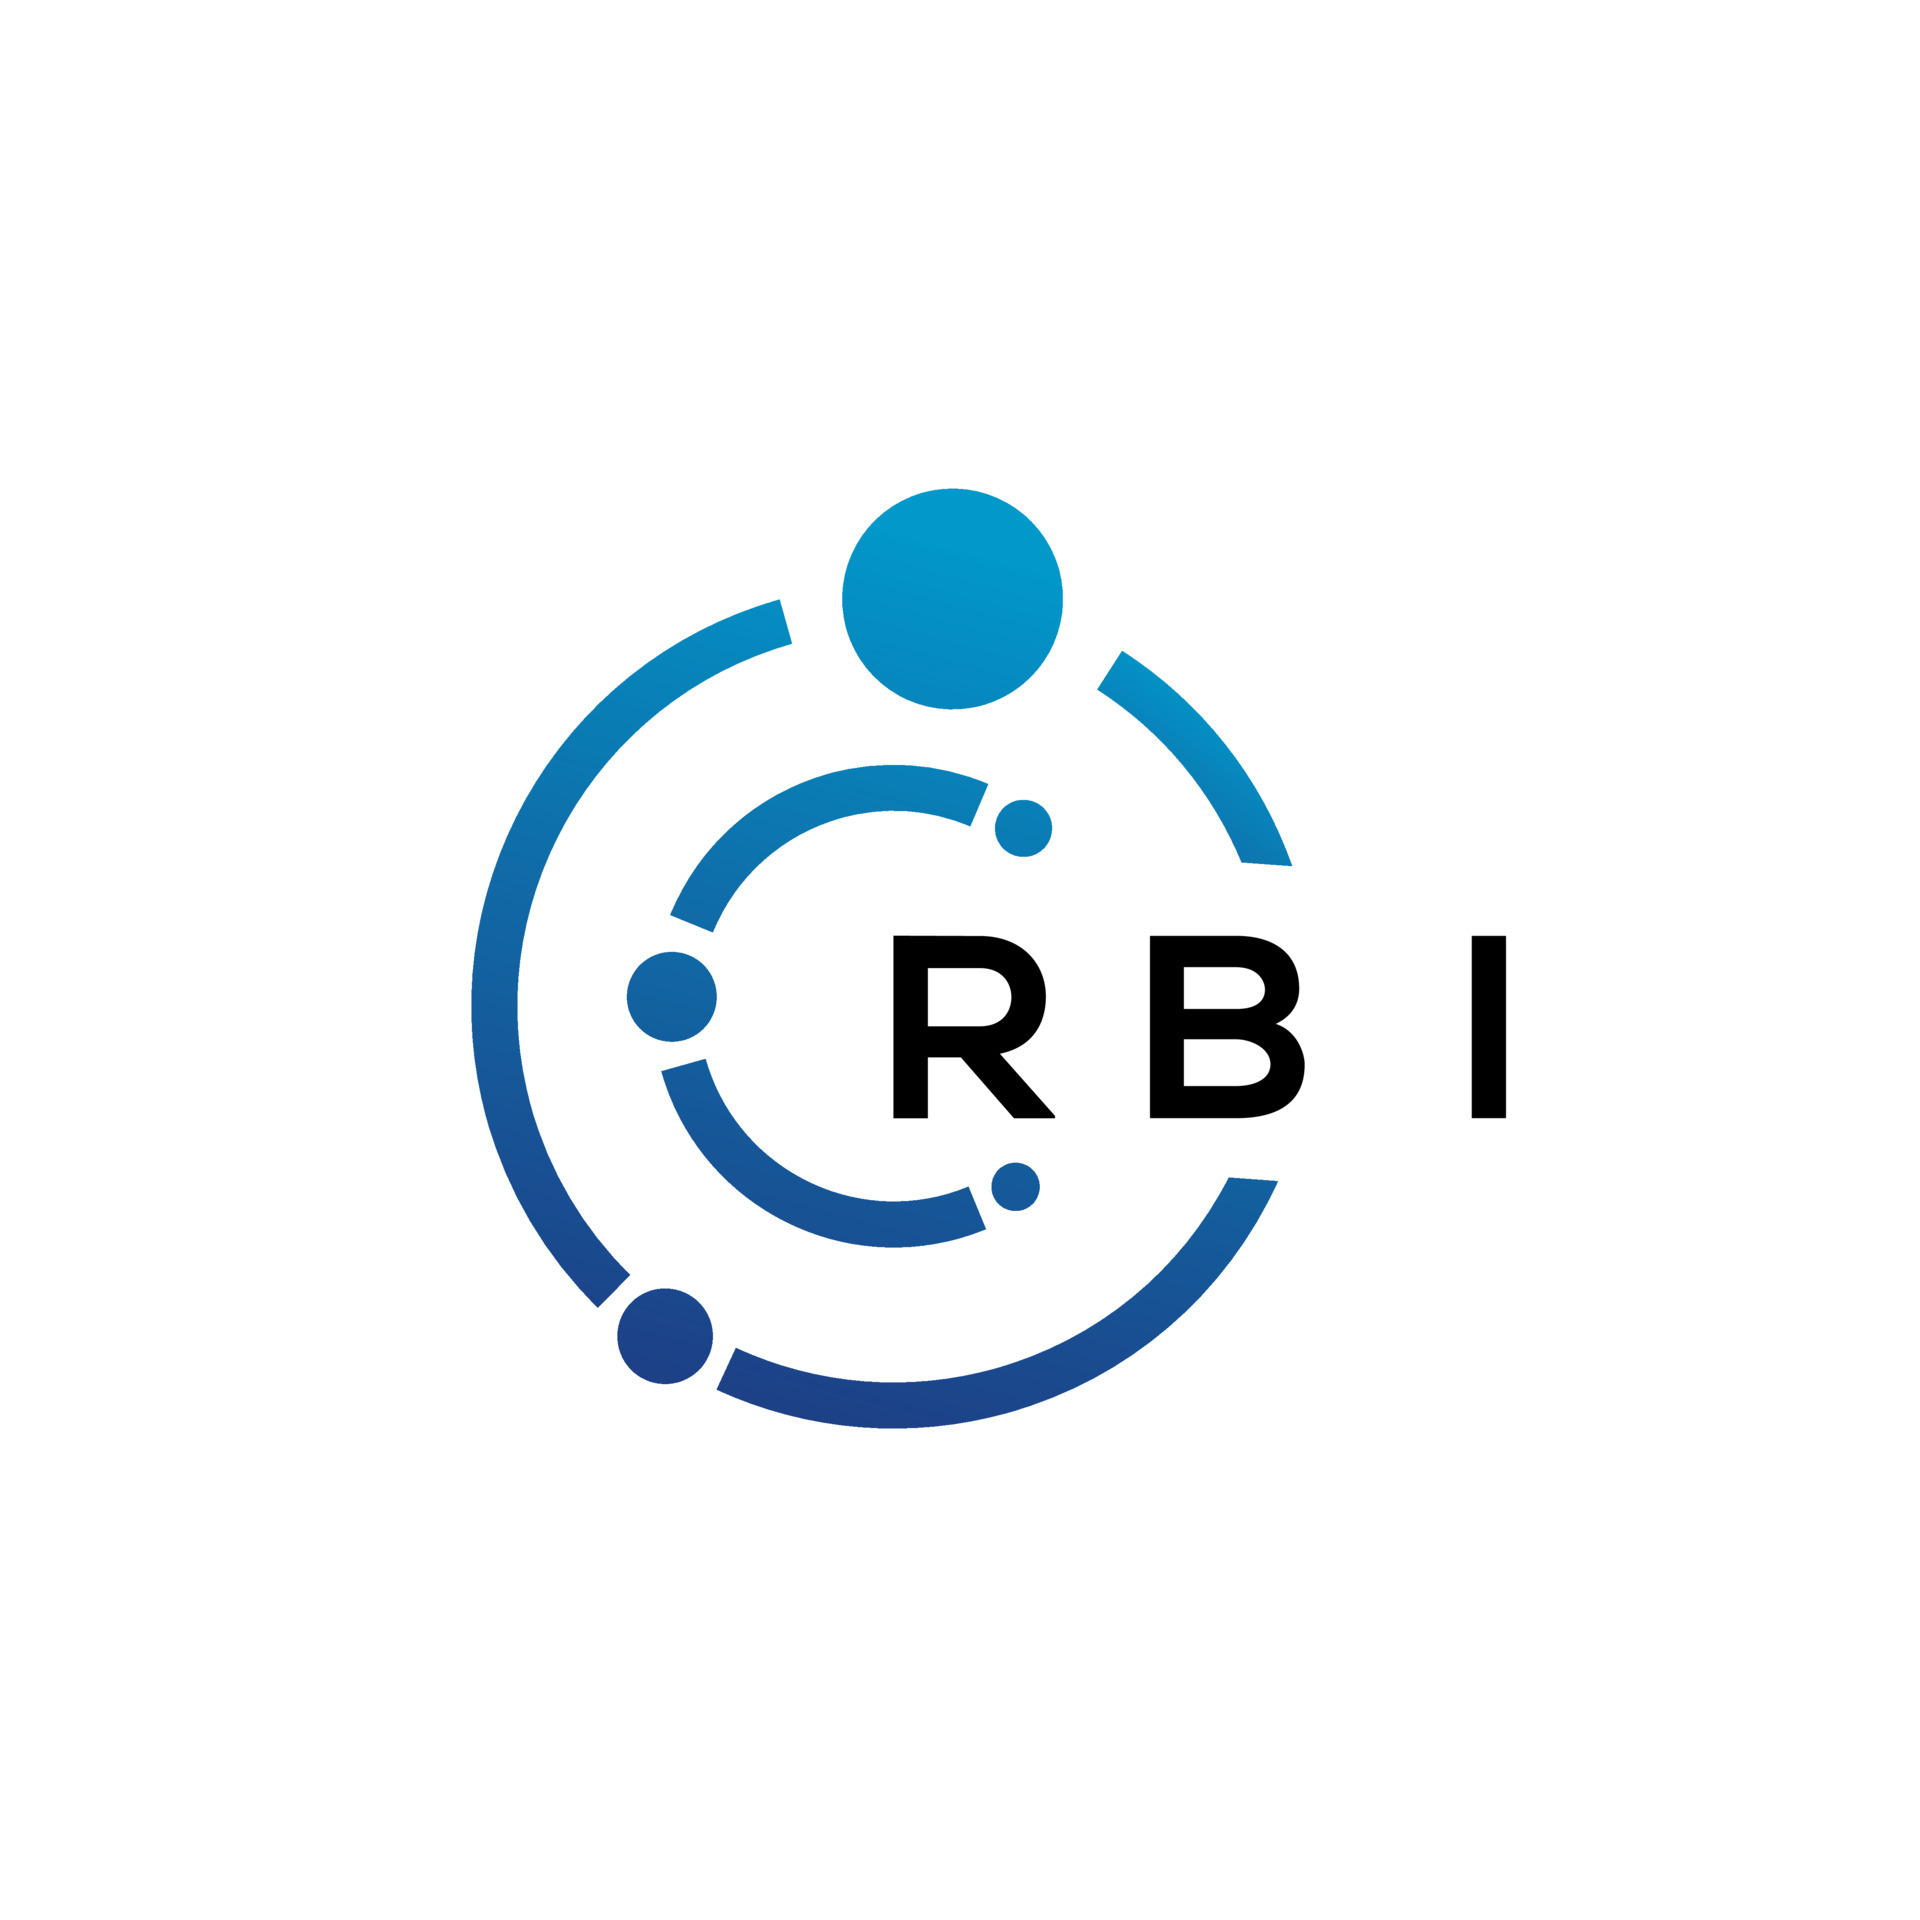 RBI letter technology logo design on white background. RBI creative ...